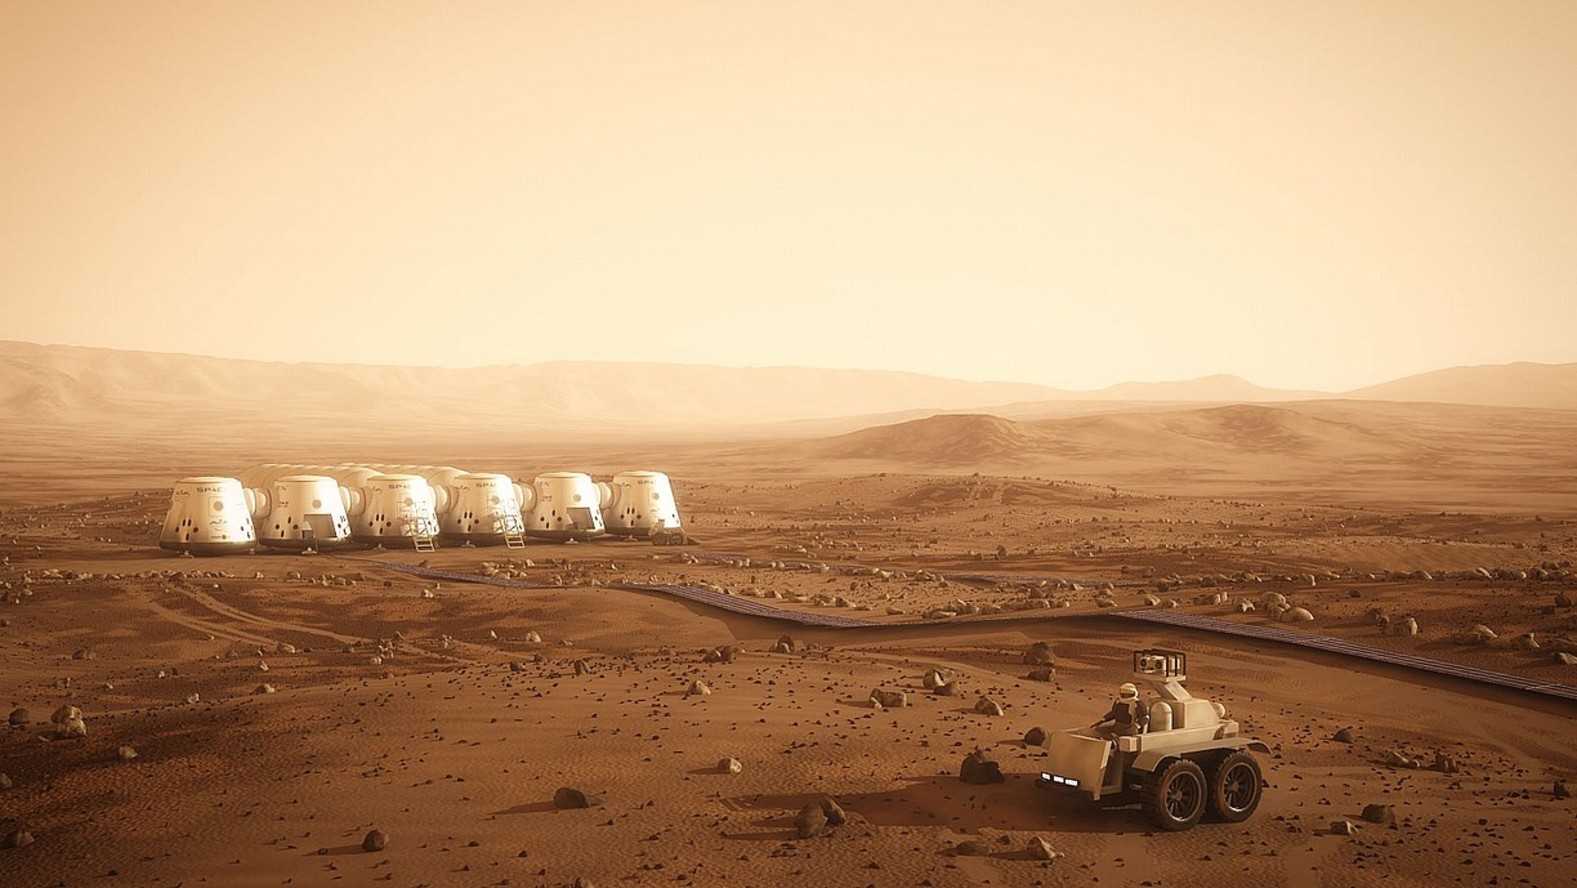 Le projet Mars One envisage de réaliser la première colonie martienne. Il reste cependant bien des défis technologiques à résoudre avant de voir ce rêve se réaliser. © Bryan Versteeg, Mars One